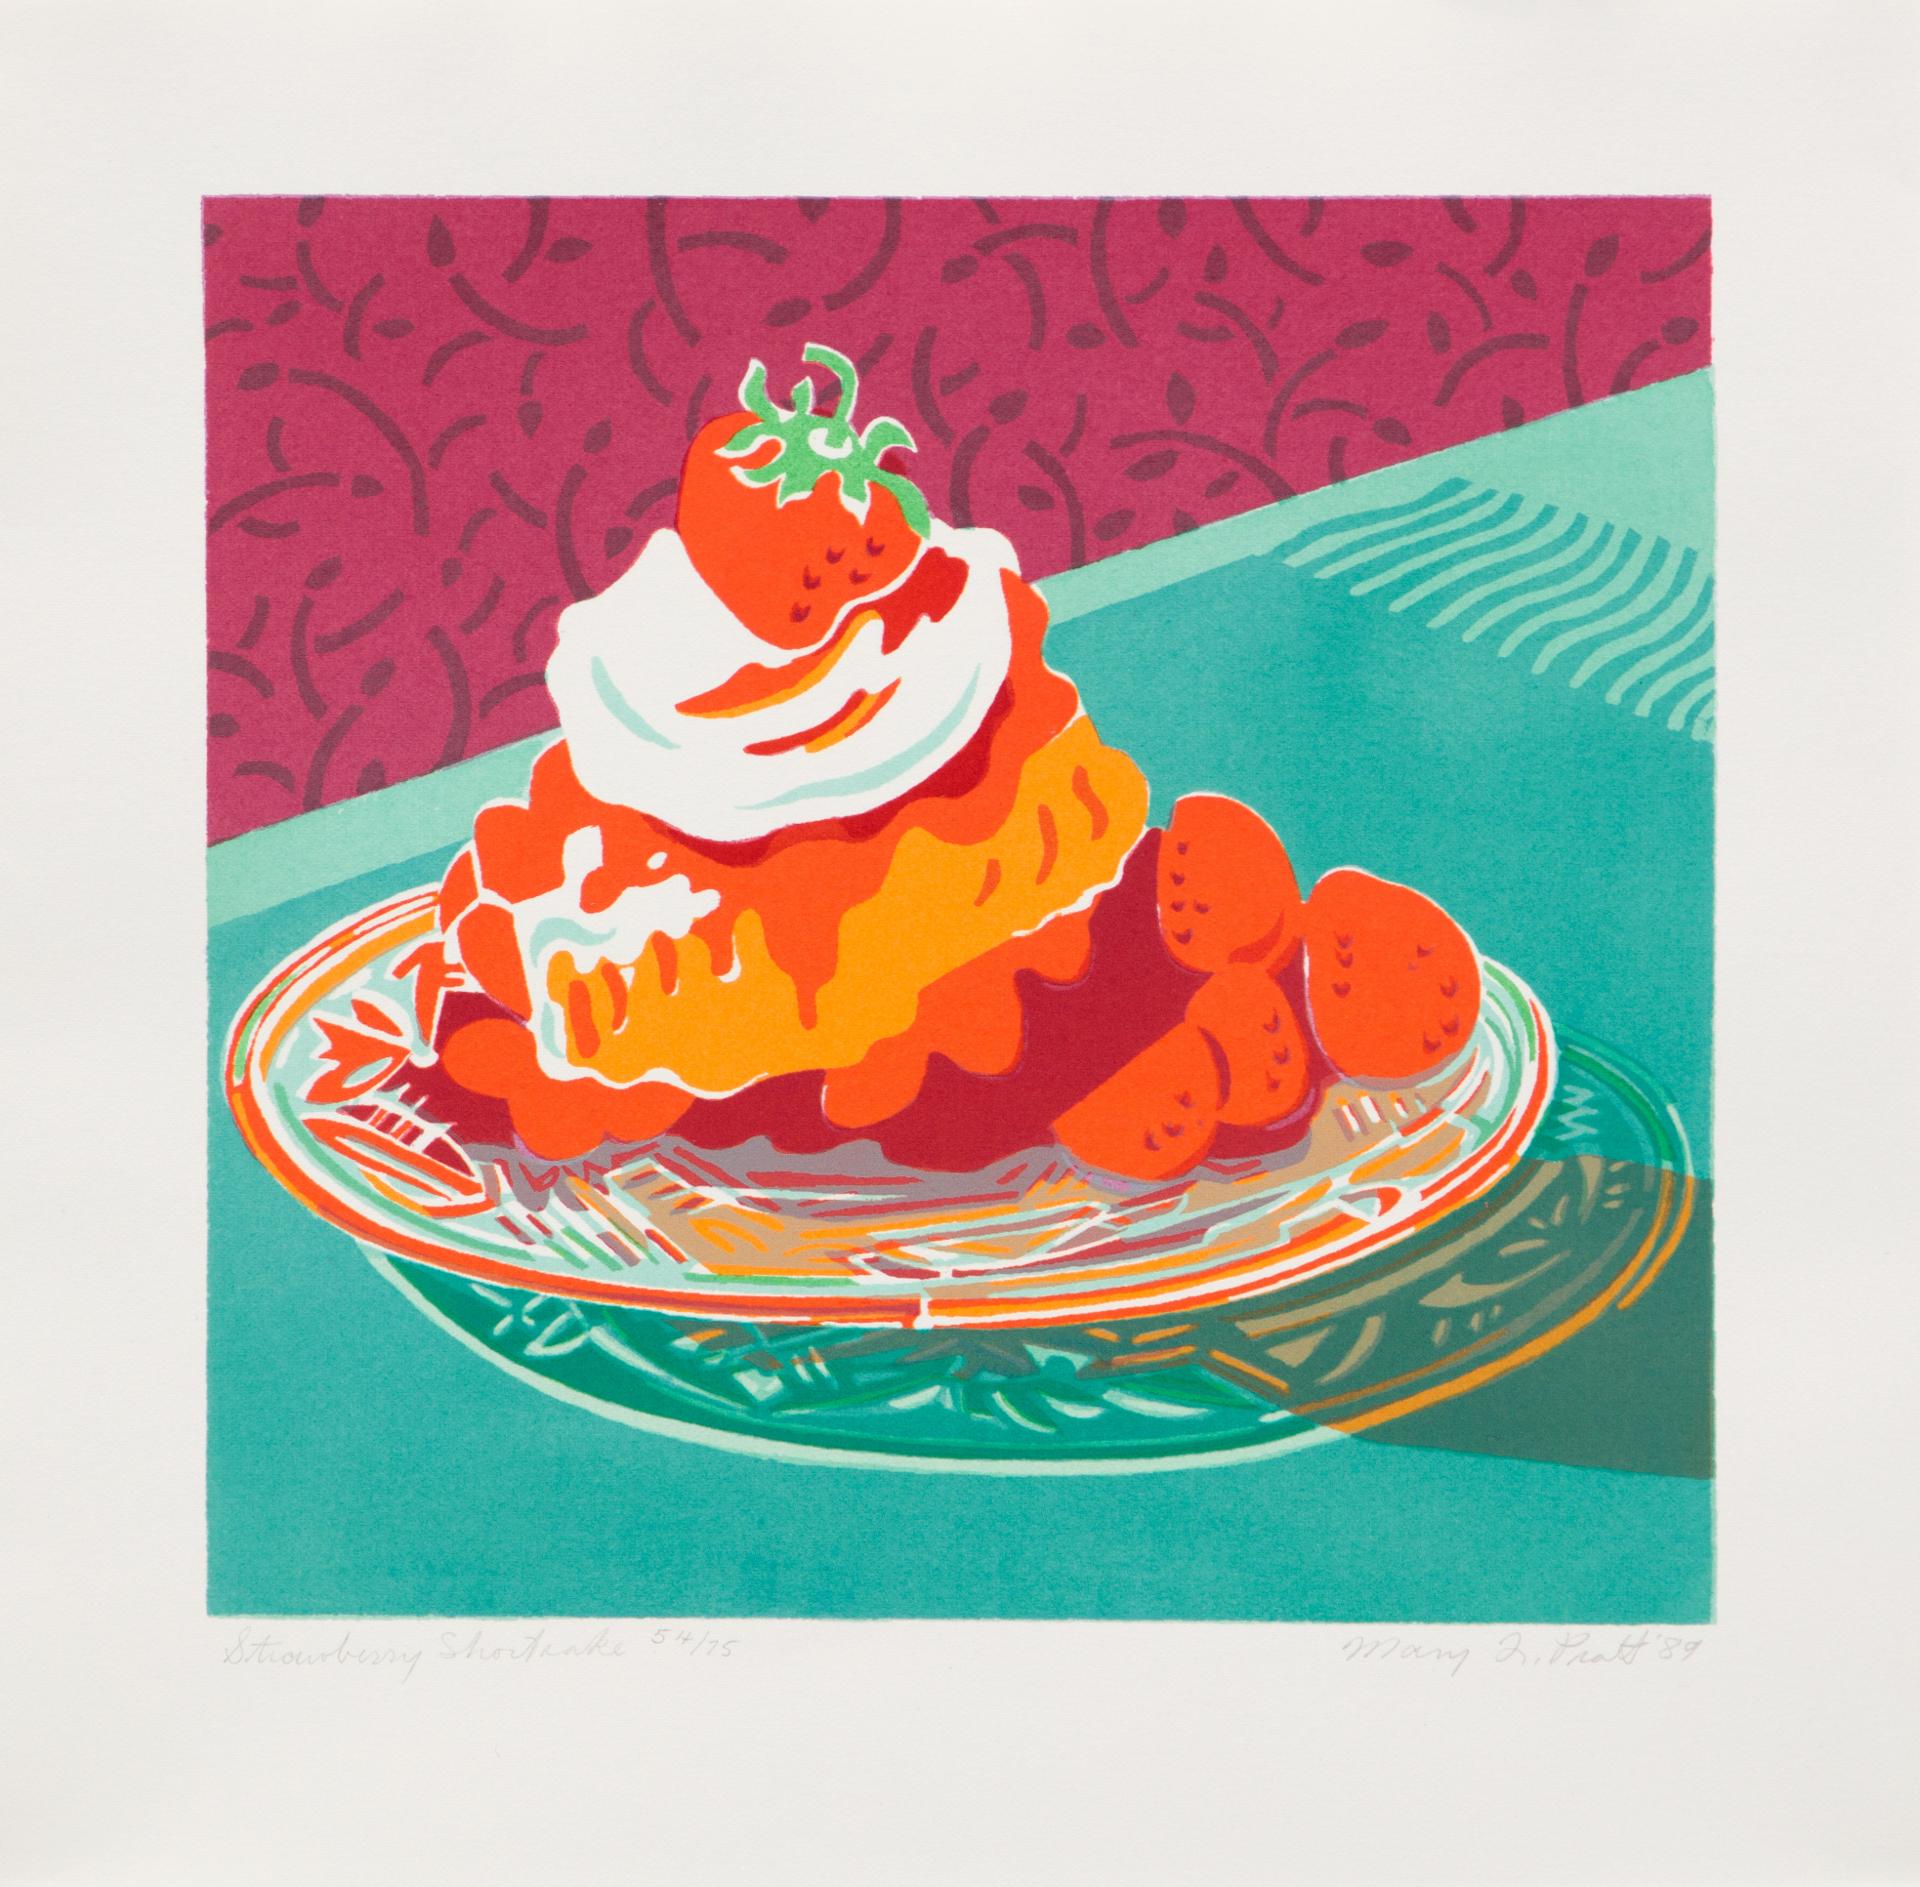 Mary Frances West Pratt (1935-2018) - Strawberry Shortcake (lithographie/lithograph) + Mary Pratt (livre/book), 1989